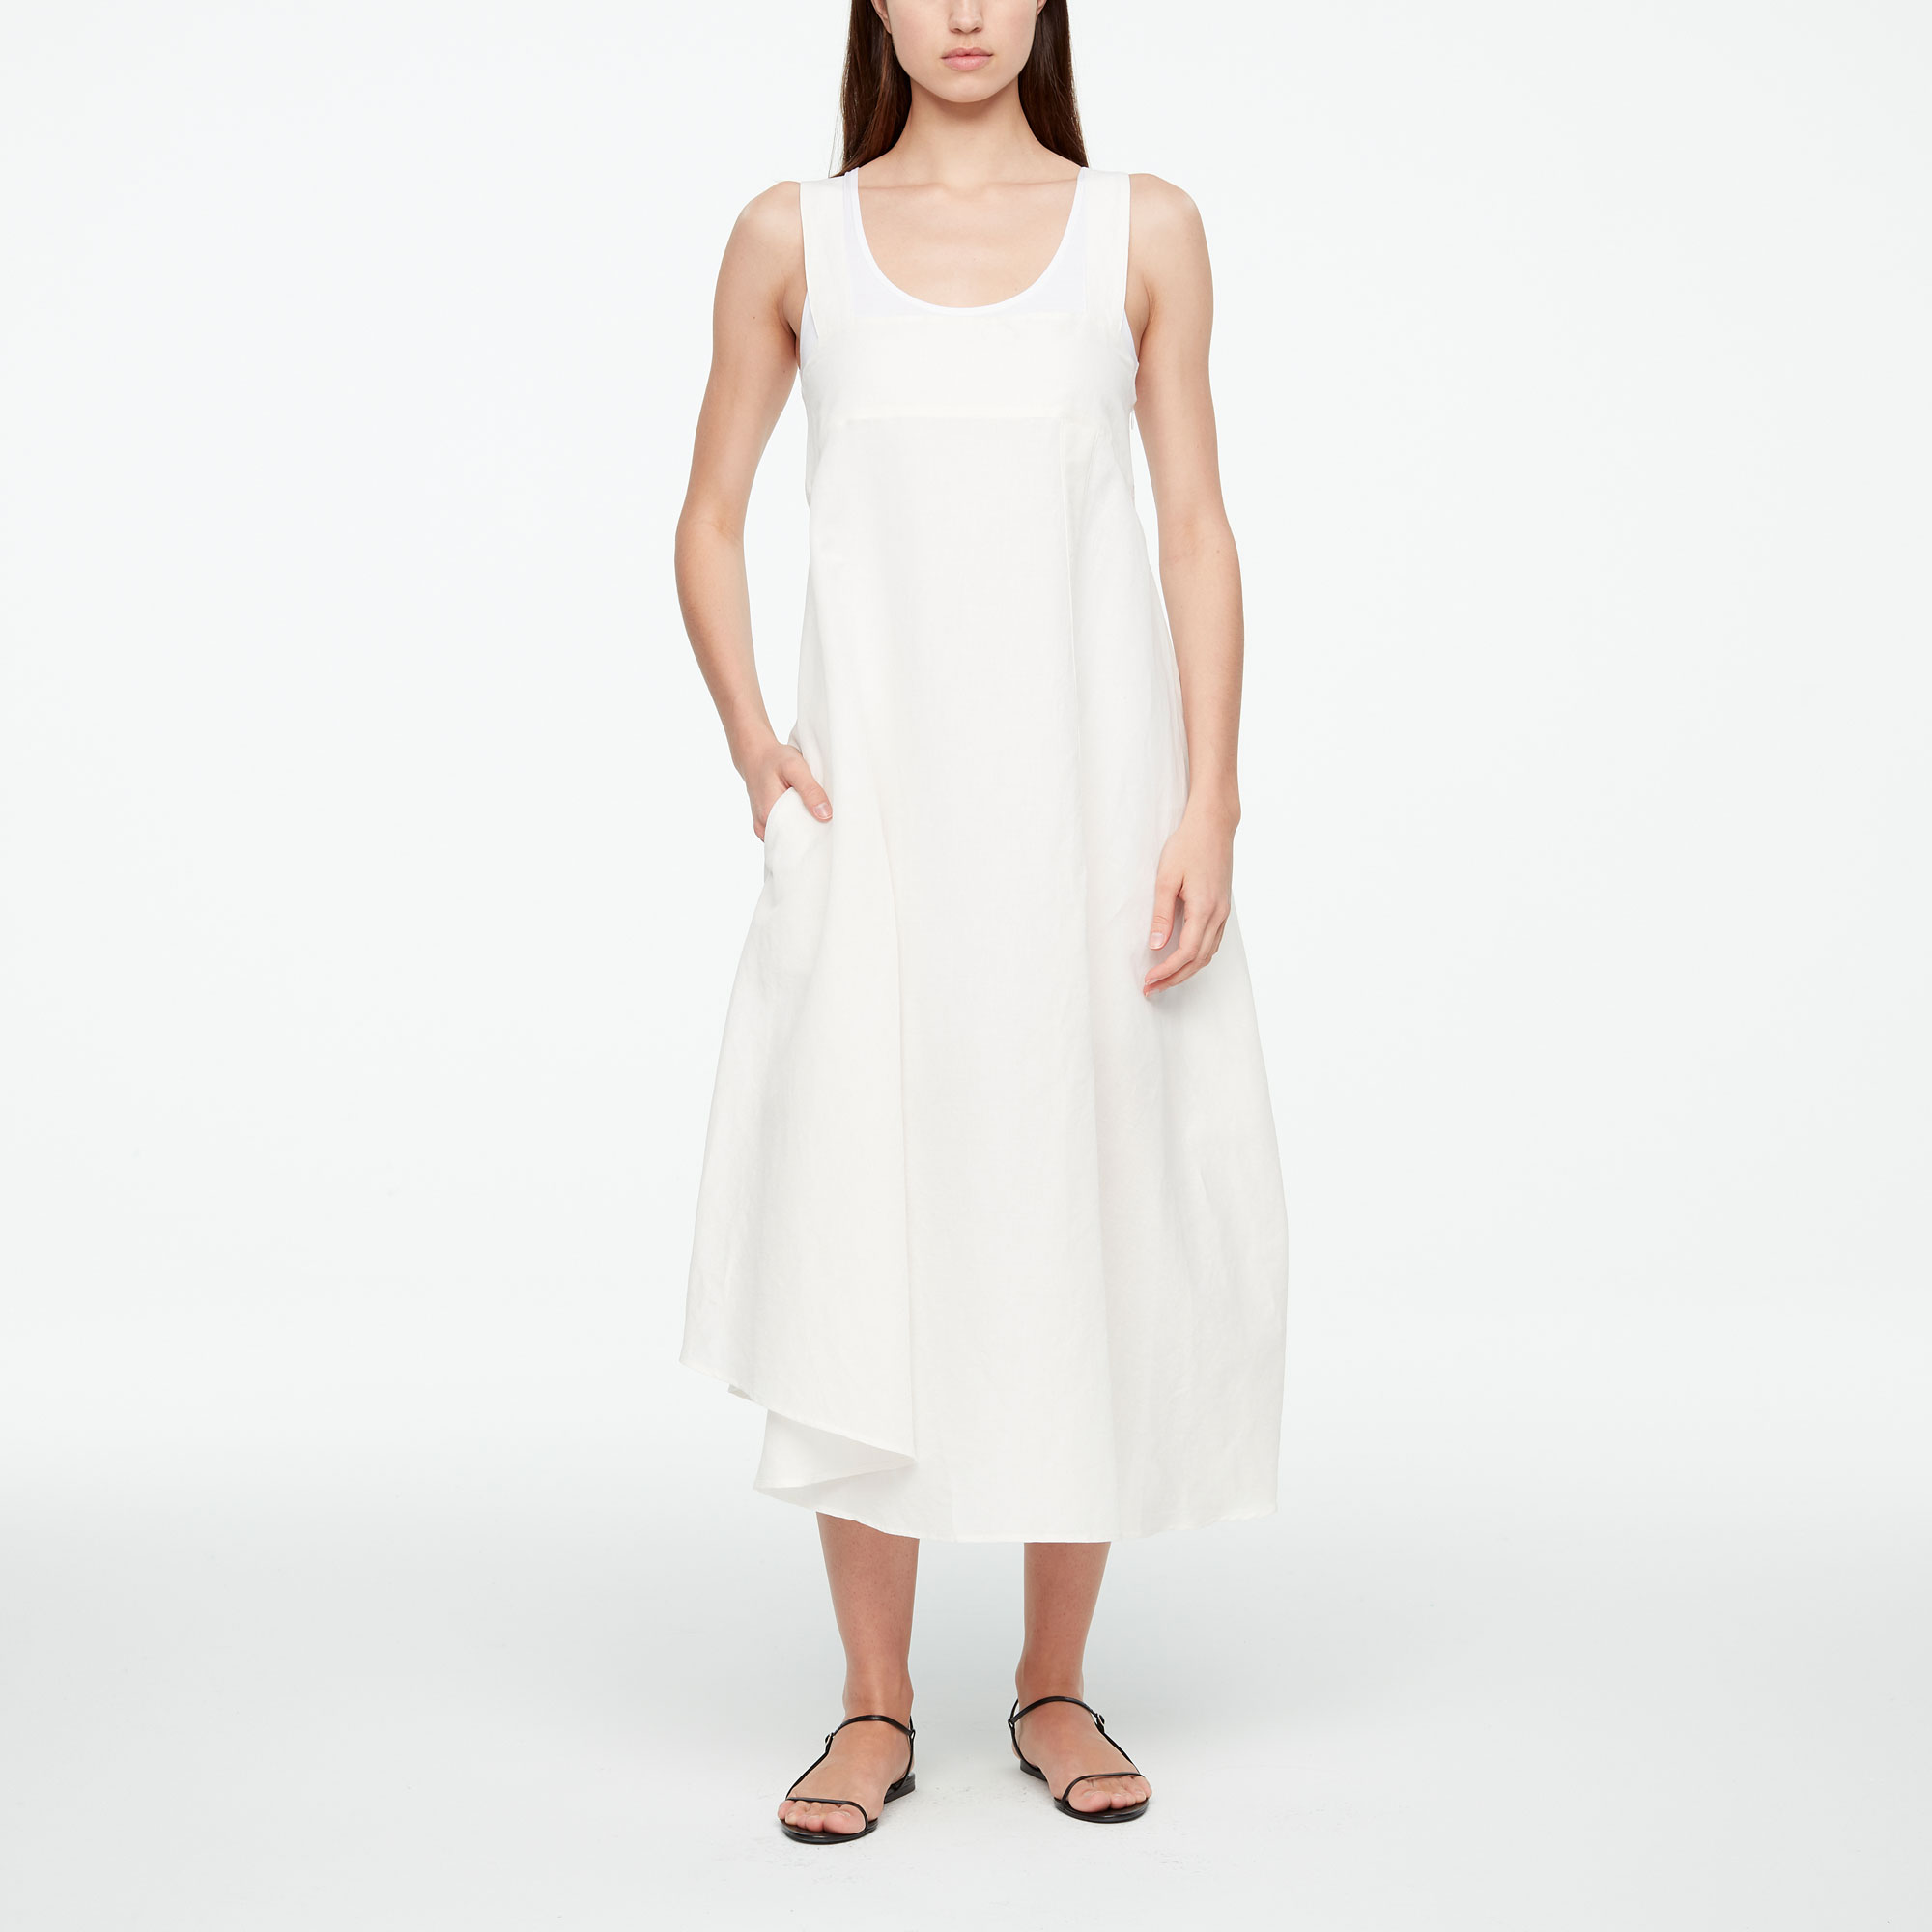 Buy your women's dresses online at Sarah Pacini